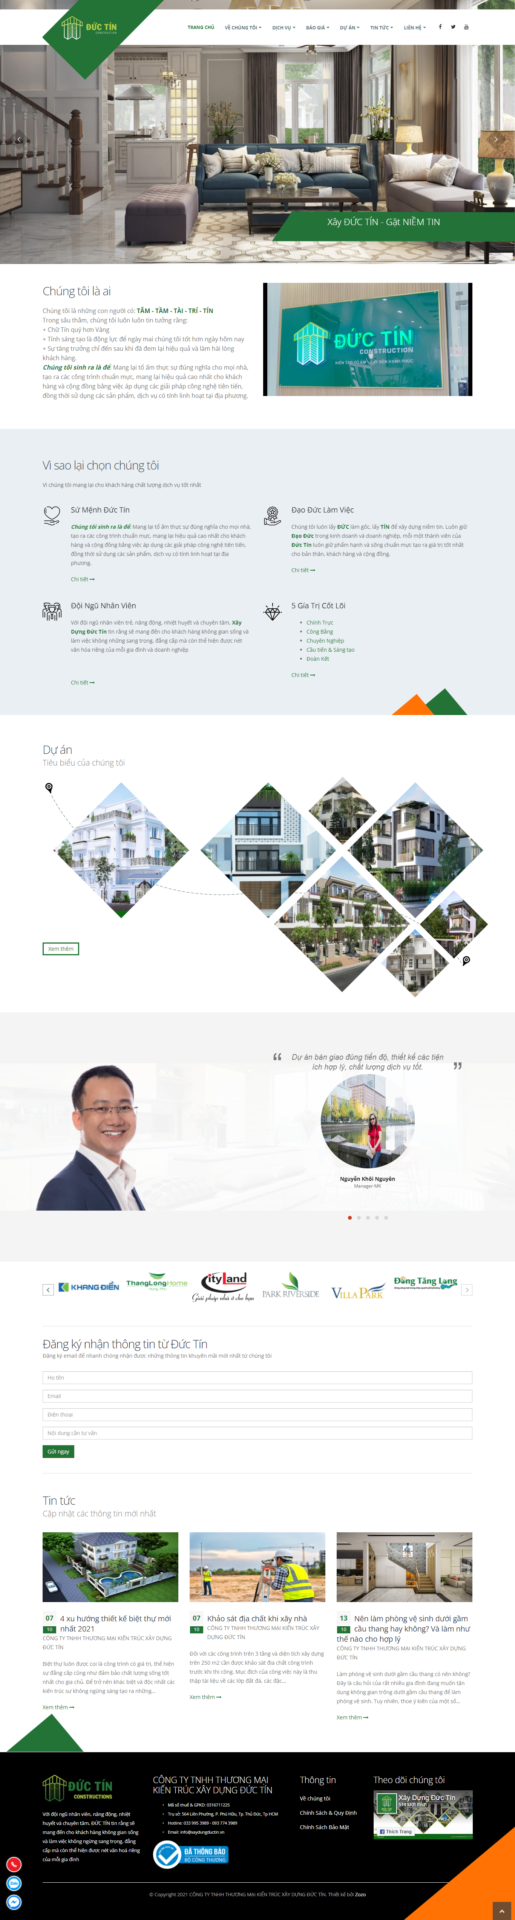 Mẫu website kiến trúc xây dựng Đức Tín